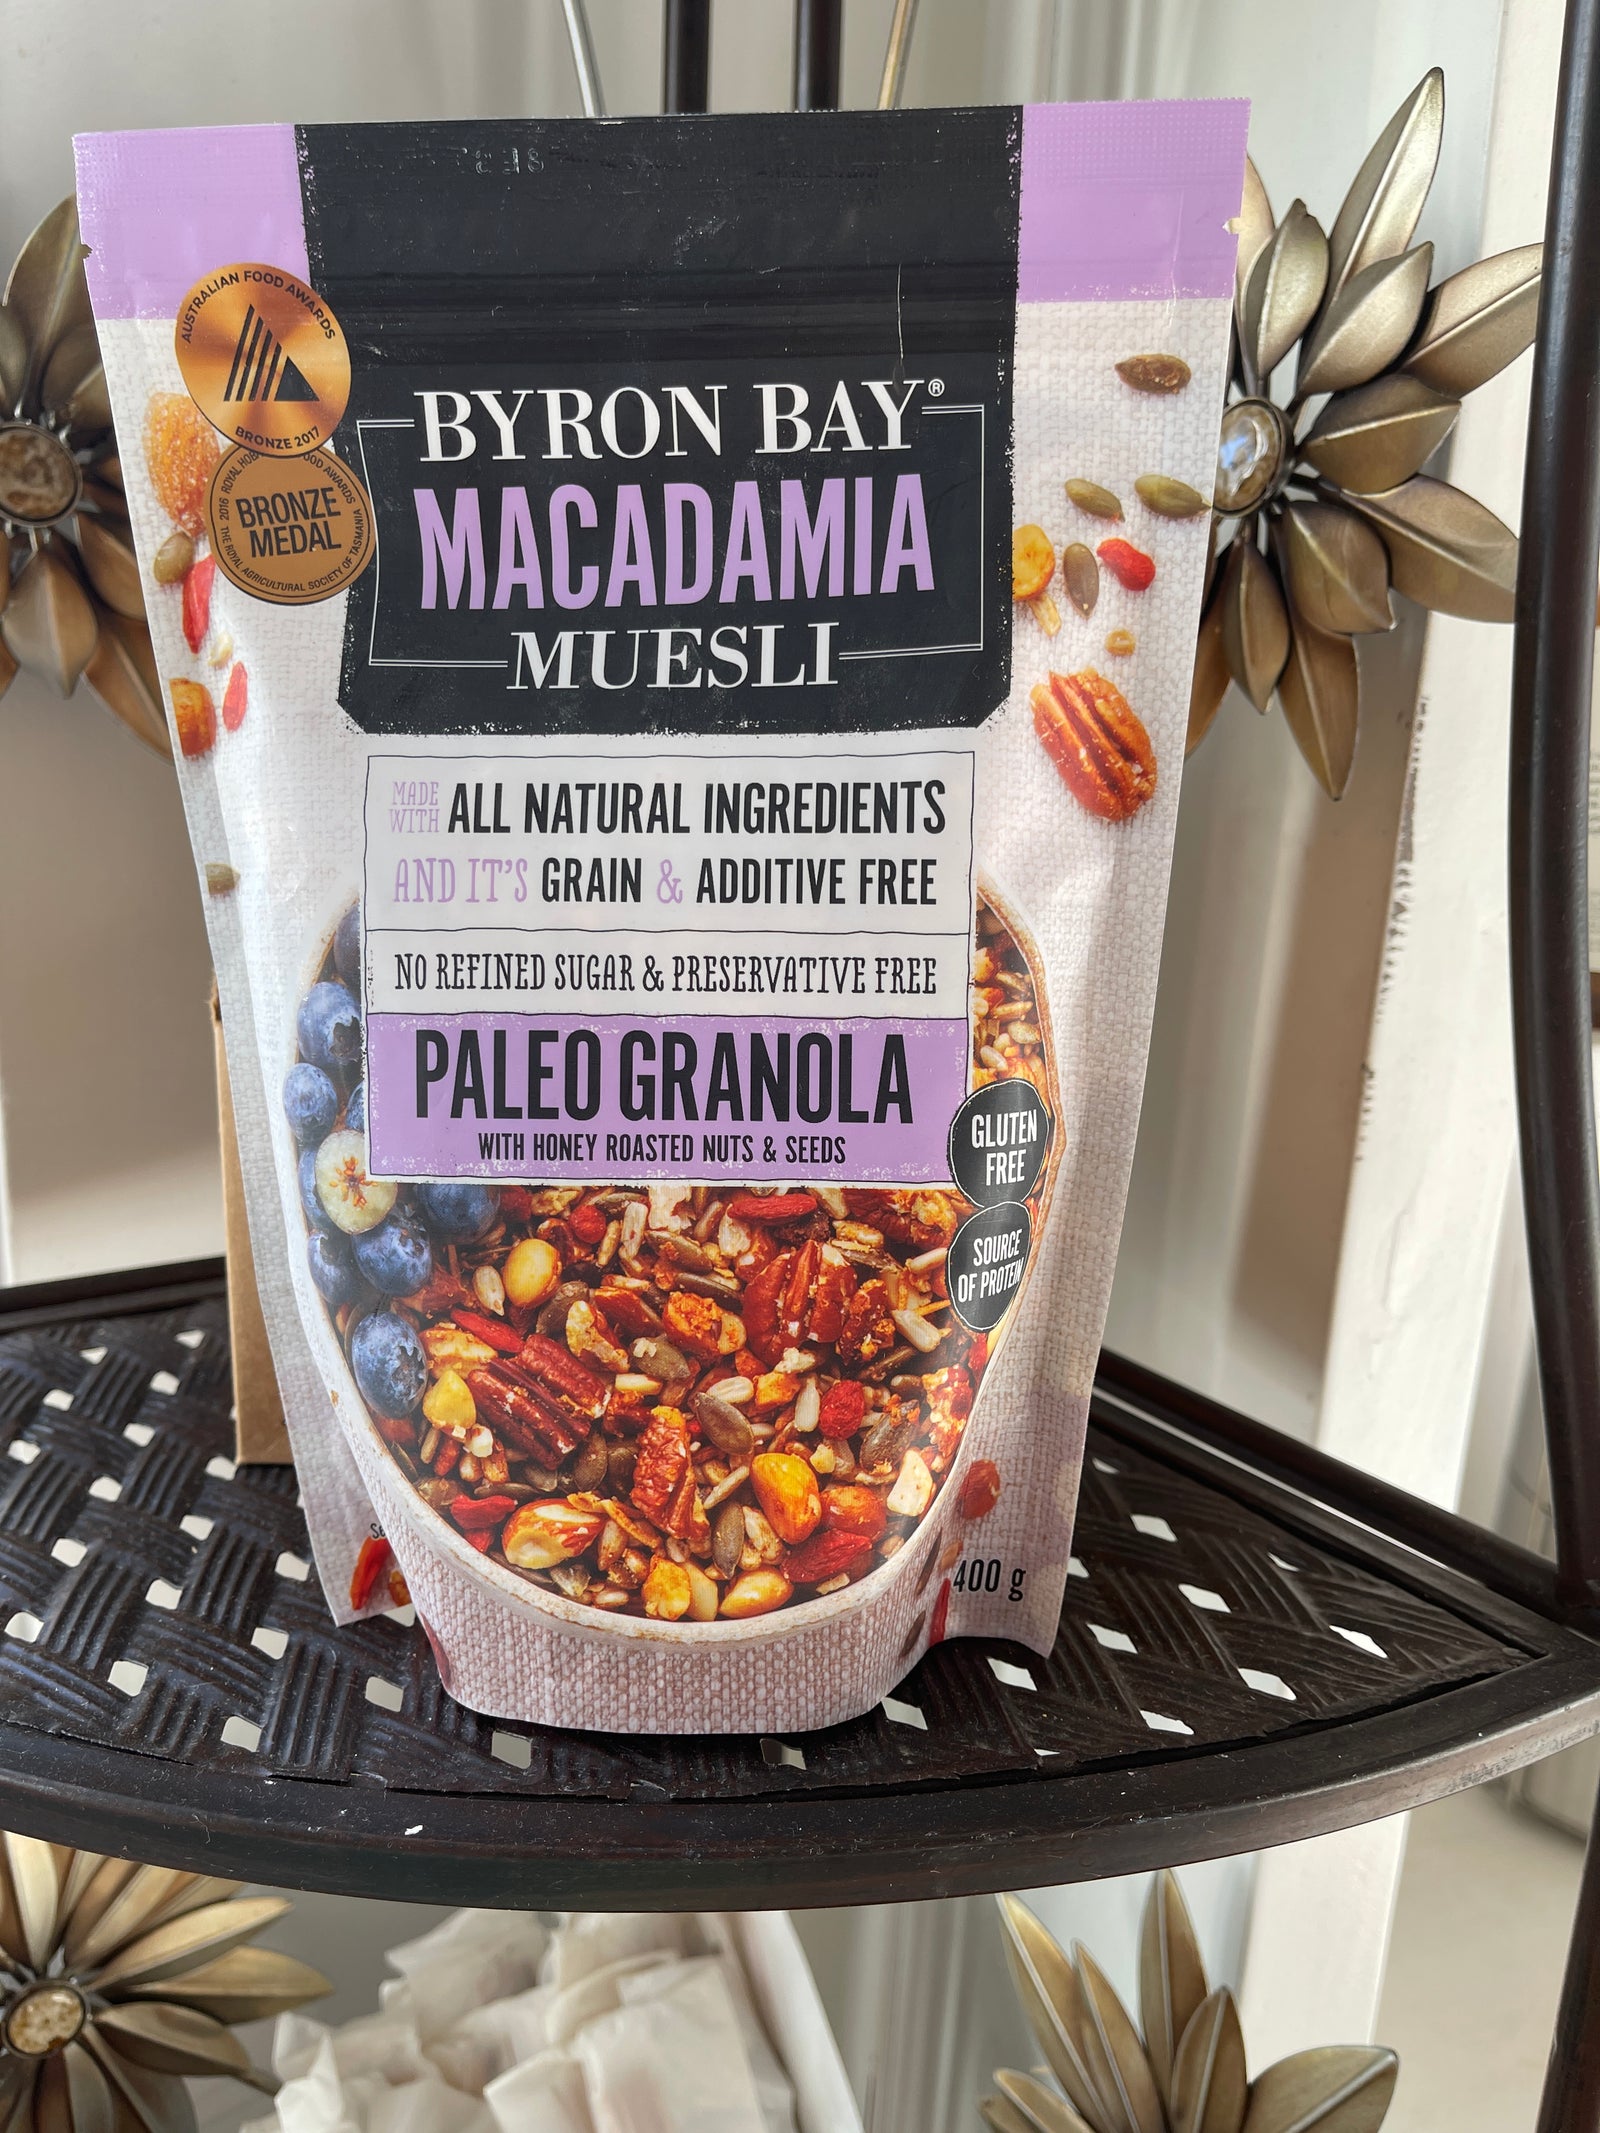 Byron Bay Macadamia Muesli Paleo Granola 400g